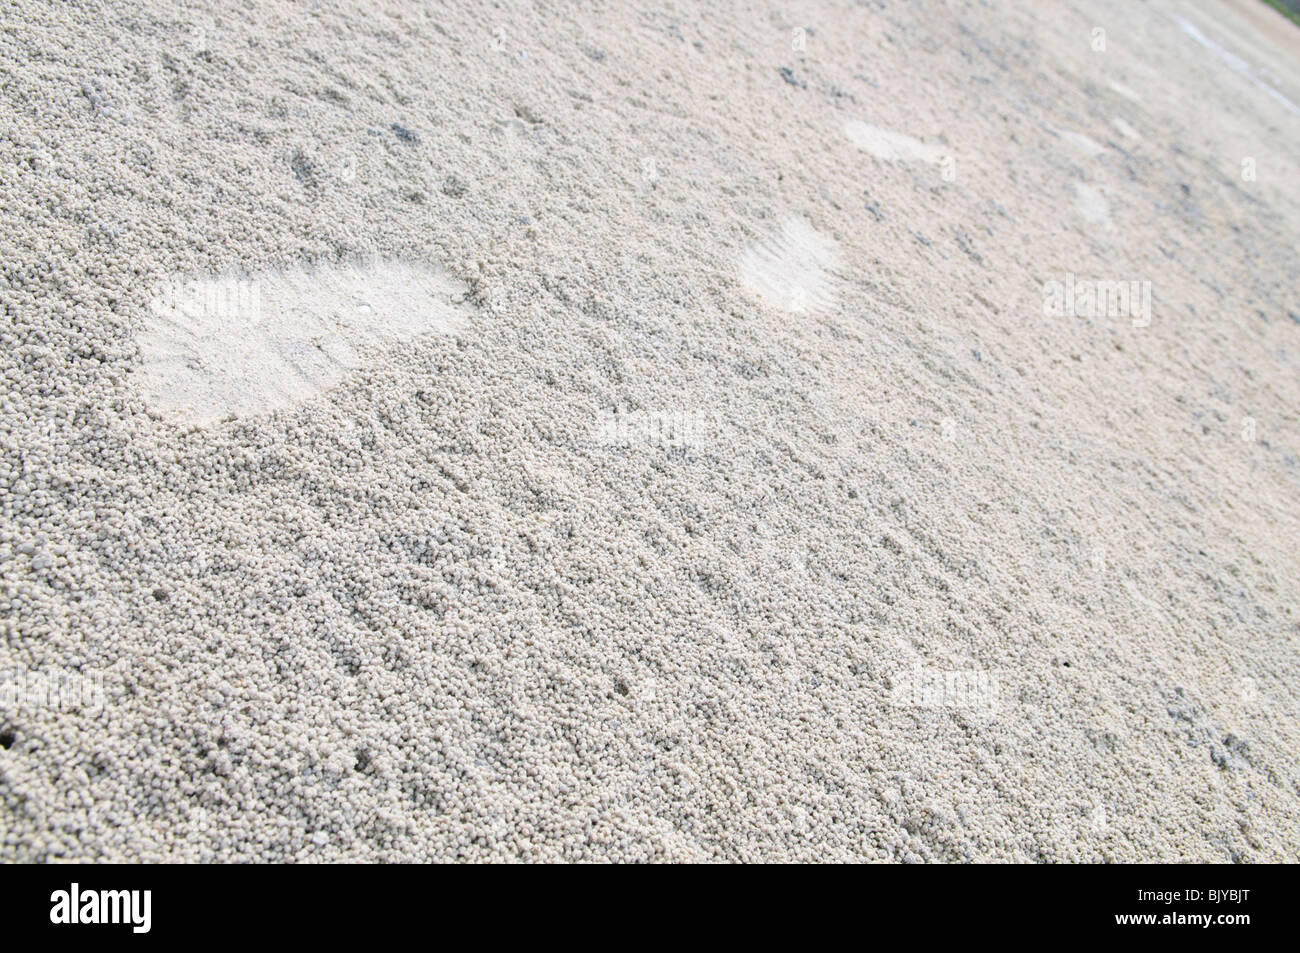 Orme nella sabbia bianca palline fatte dai granchi Foto Stock